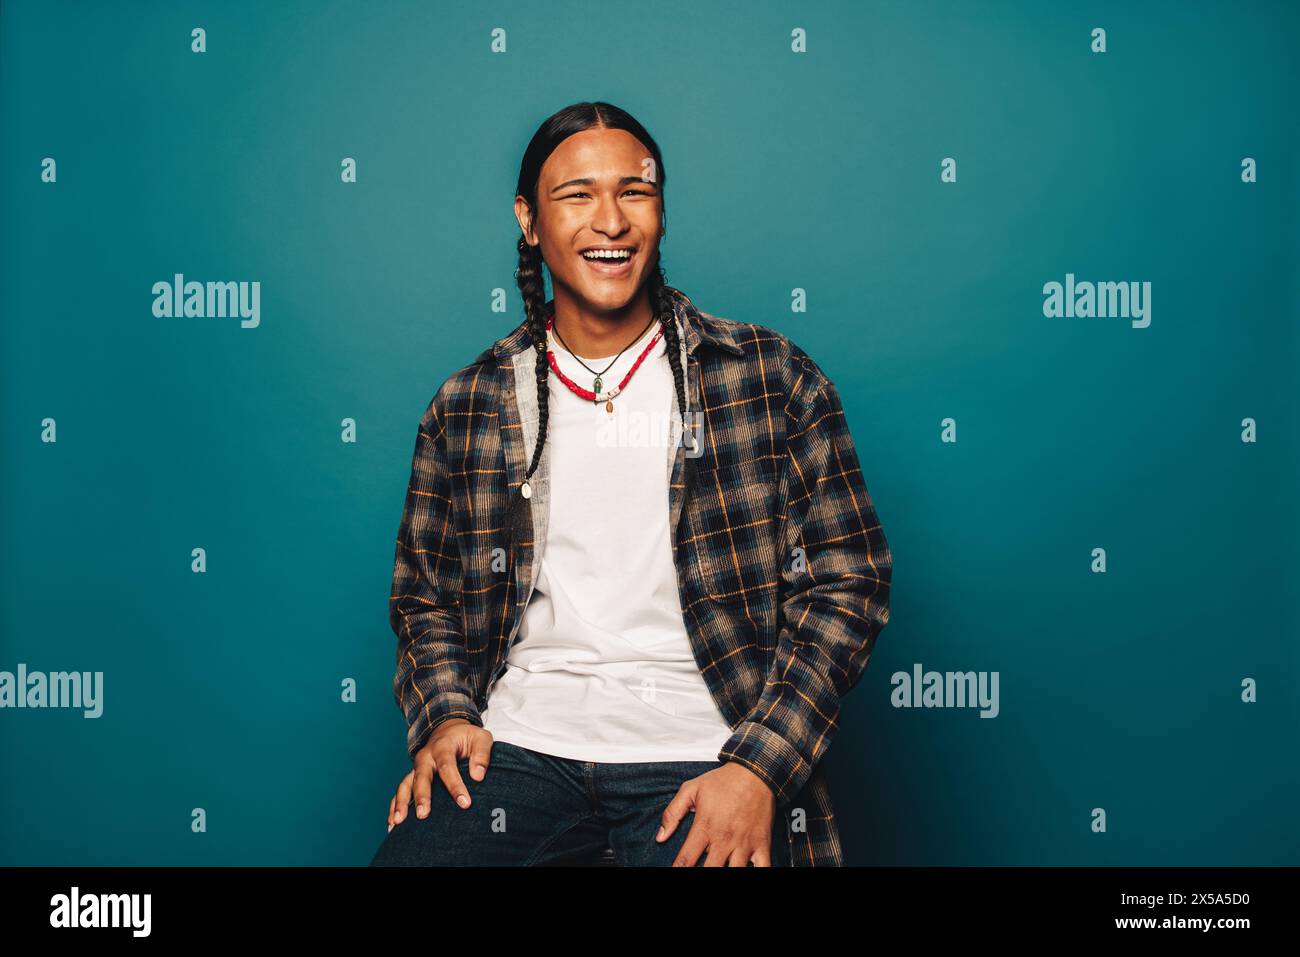 Confiant, heureux homme autochtone avec des cheveux tressés et des bijoux ethniques pose dans un studio portant des vêtements décontractés et un fond bleu. Banque D'Images